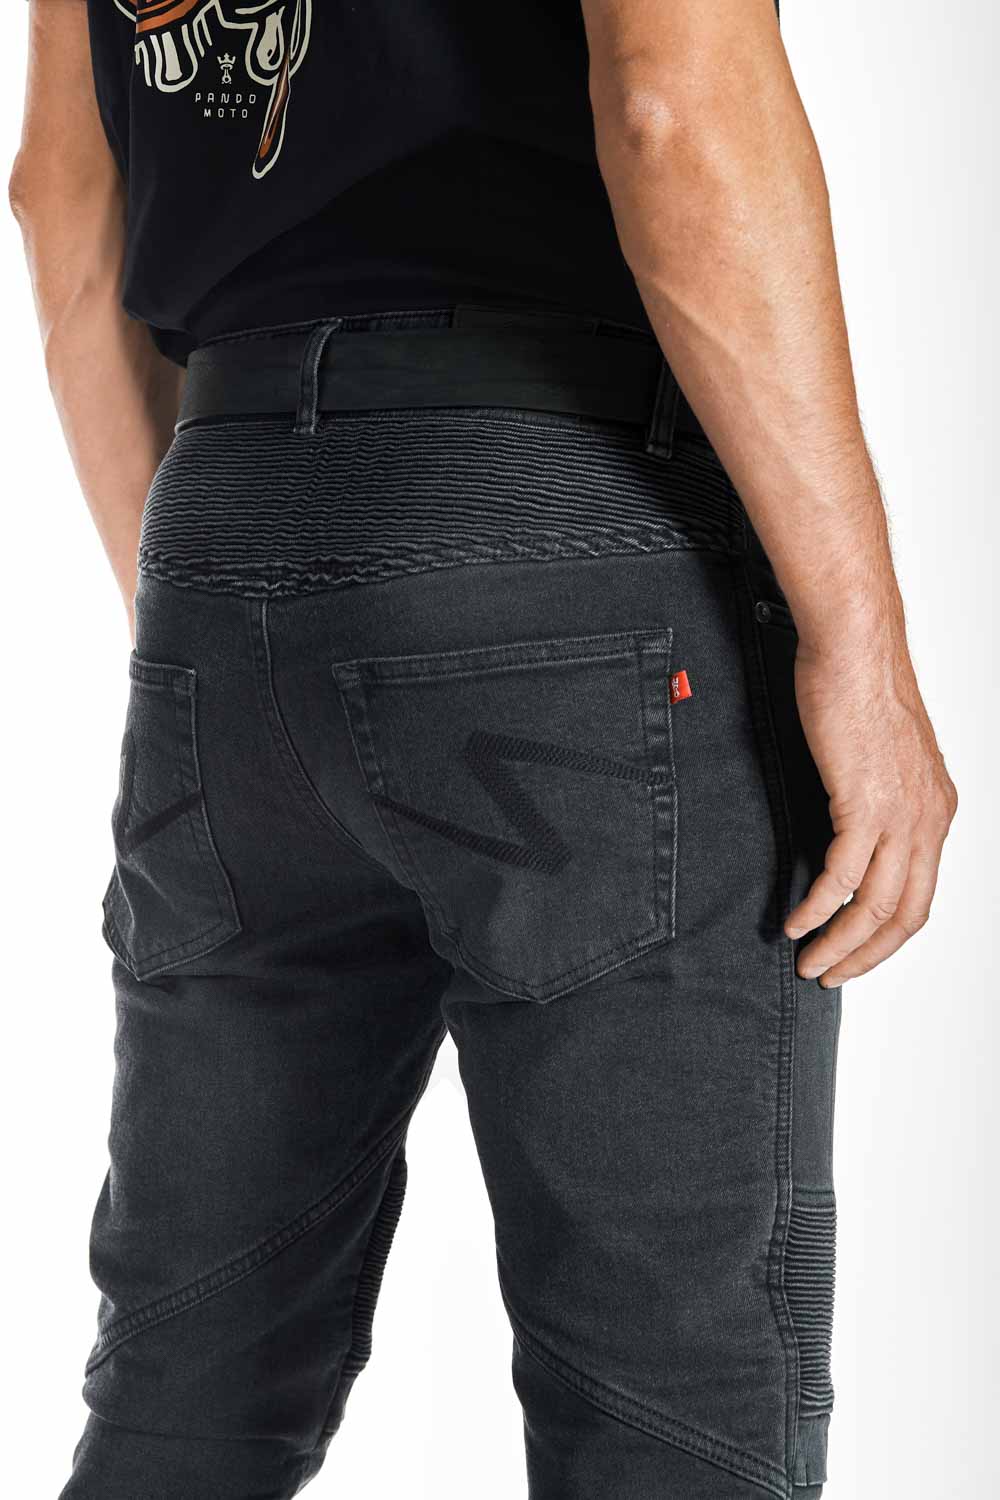 Karl Devil 9 – Men's Slim-Fit Motorcycle Jeans rear view